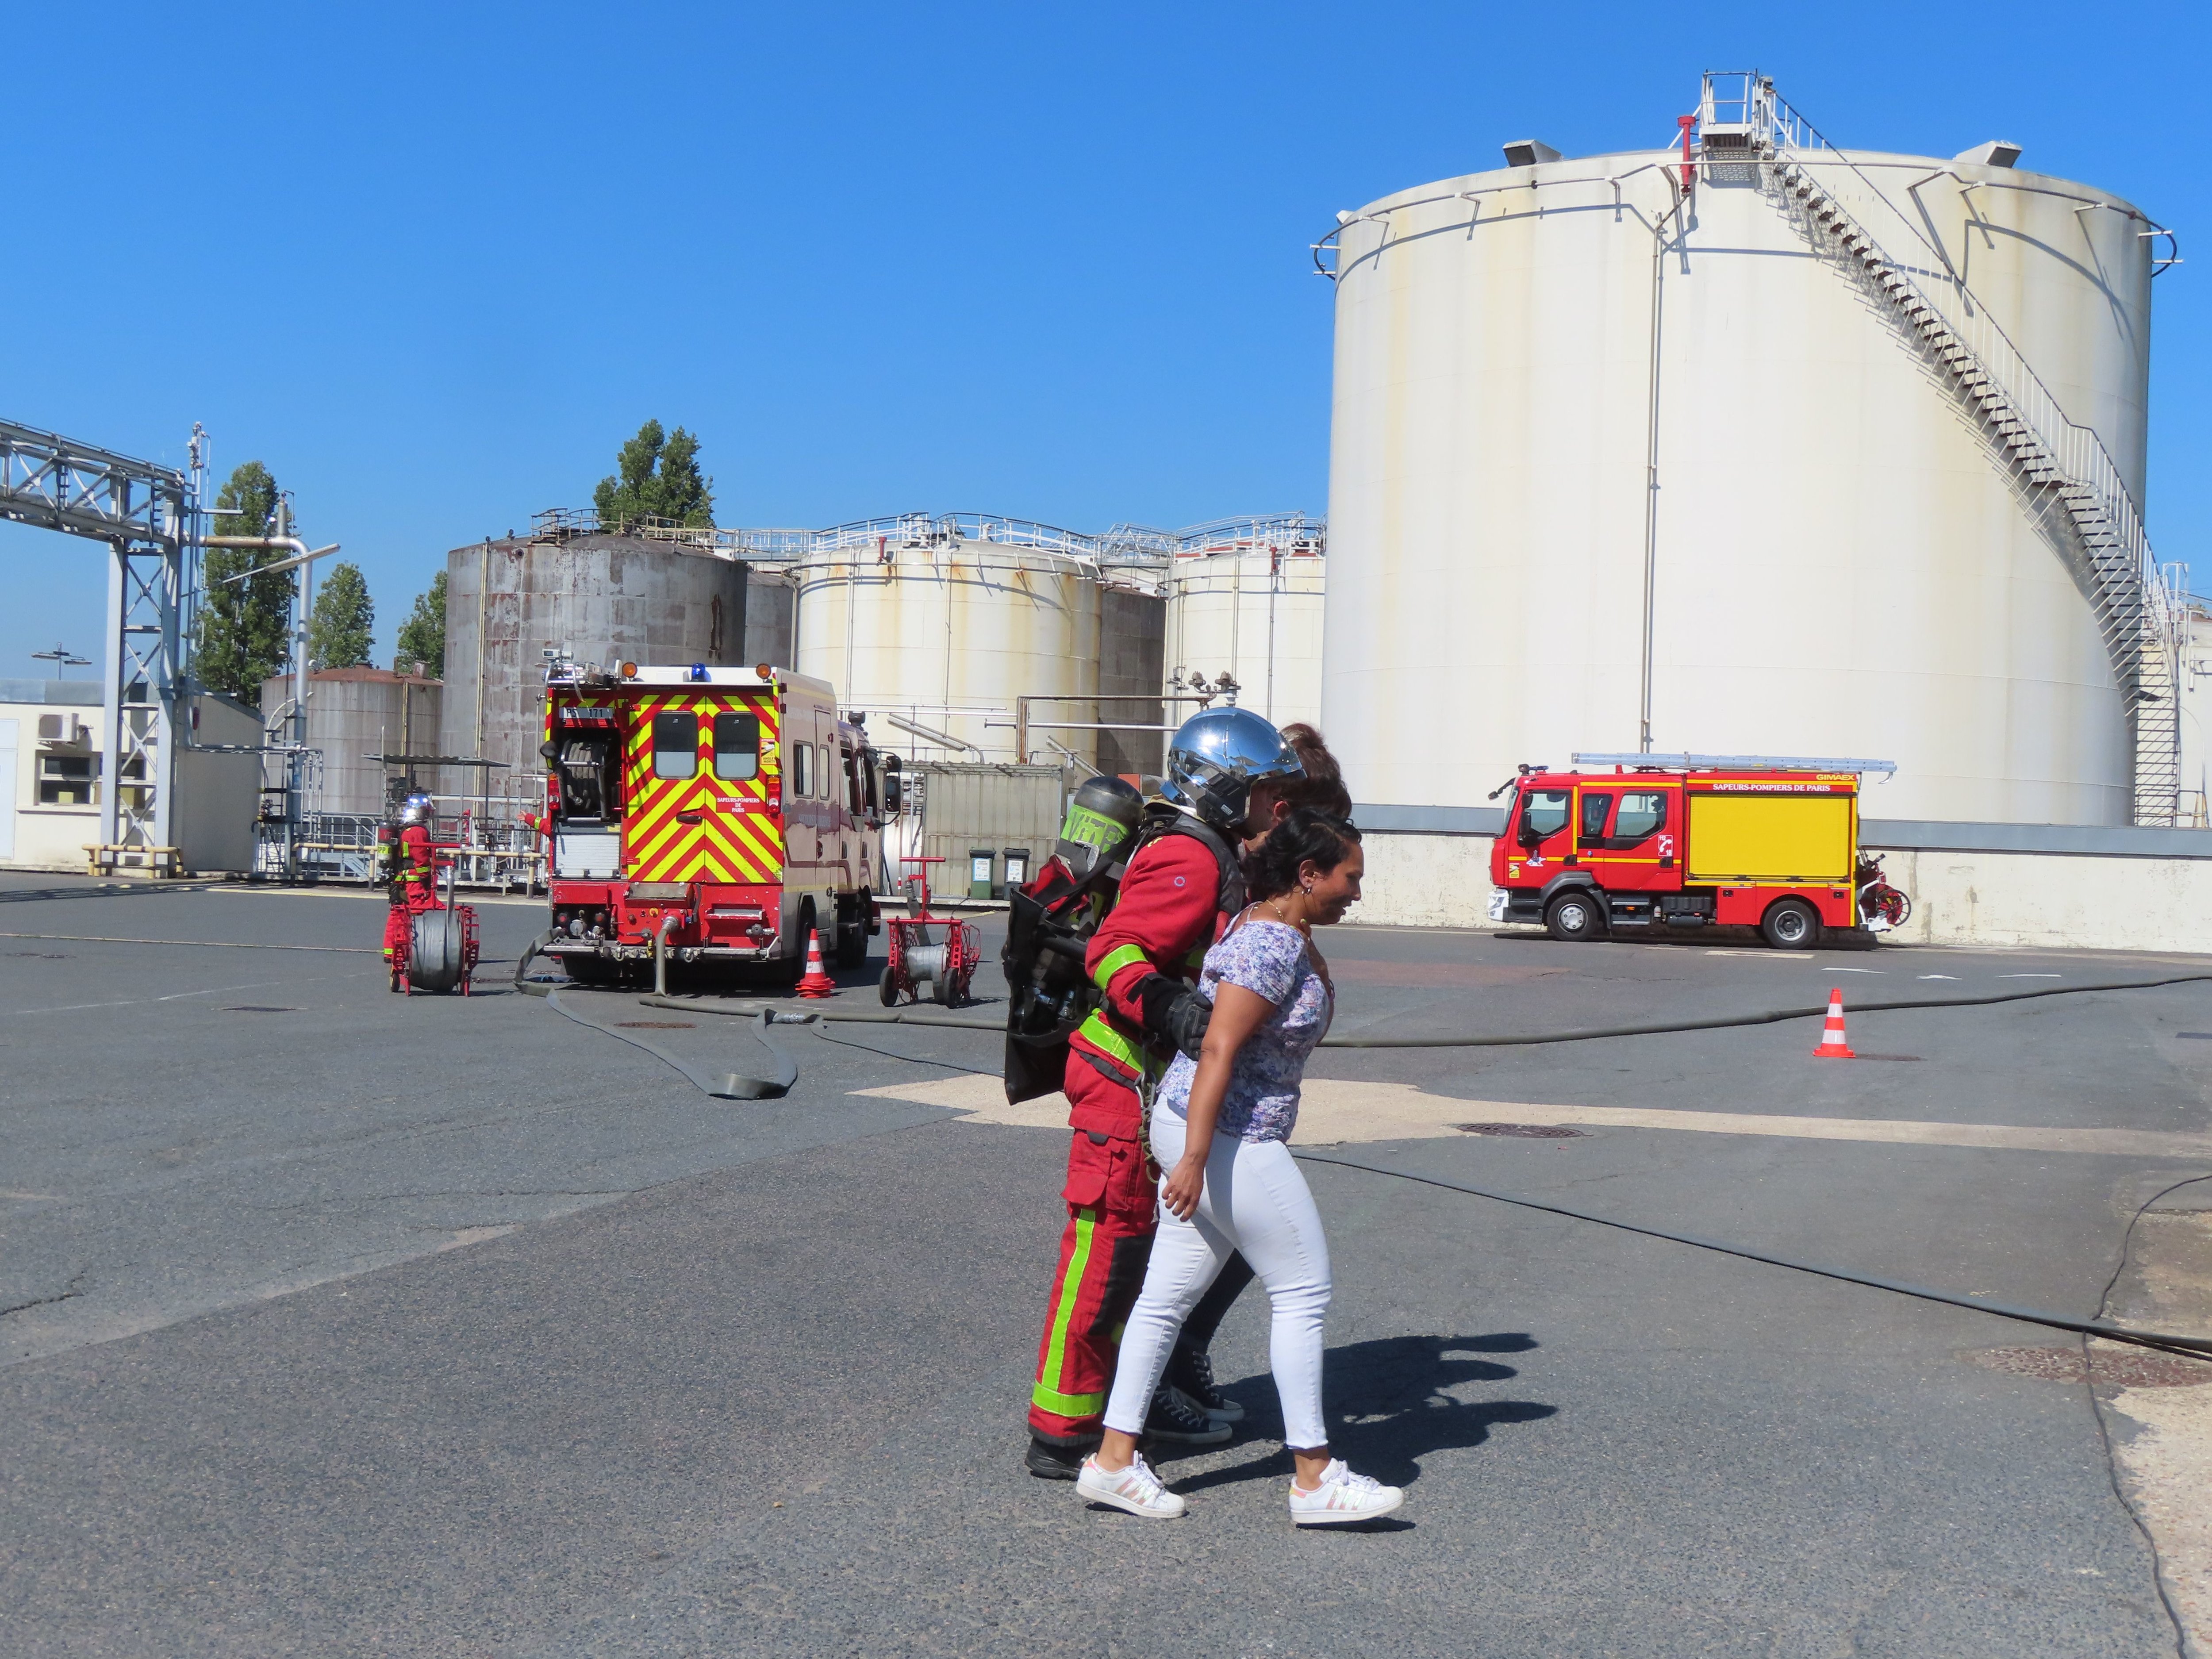 Vitry-sur-Seine, ce jeudi après-midi. Les pompiers évacuent les victimes lors de l'exercice incendie organisé par la préfecture du Val-de-Marne au dépôt pétrolier. LP/Sylvain Deleuze